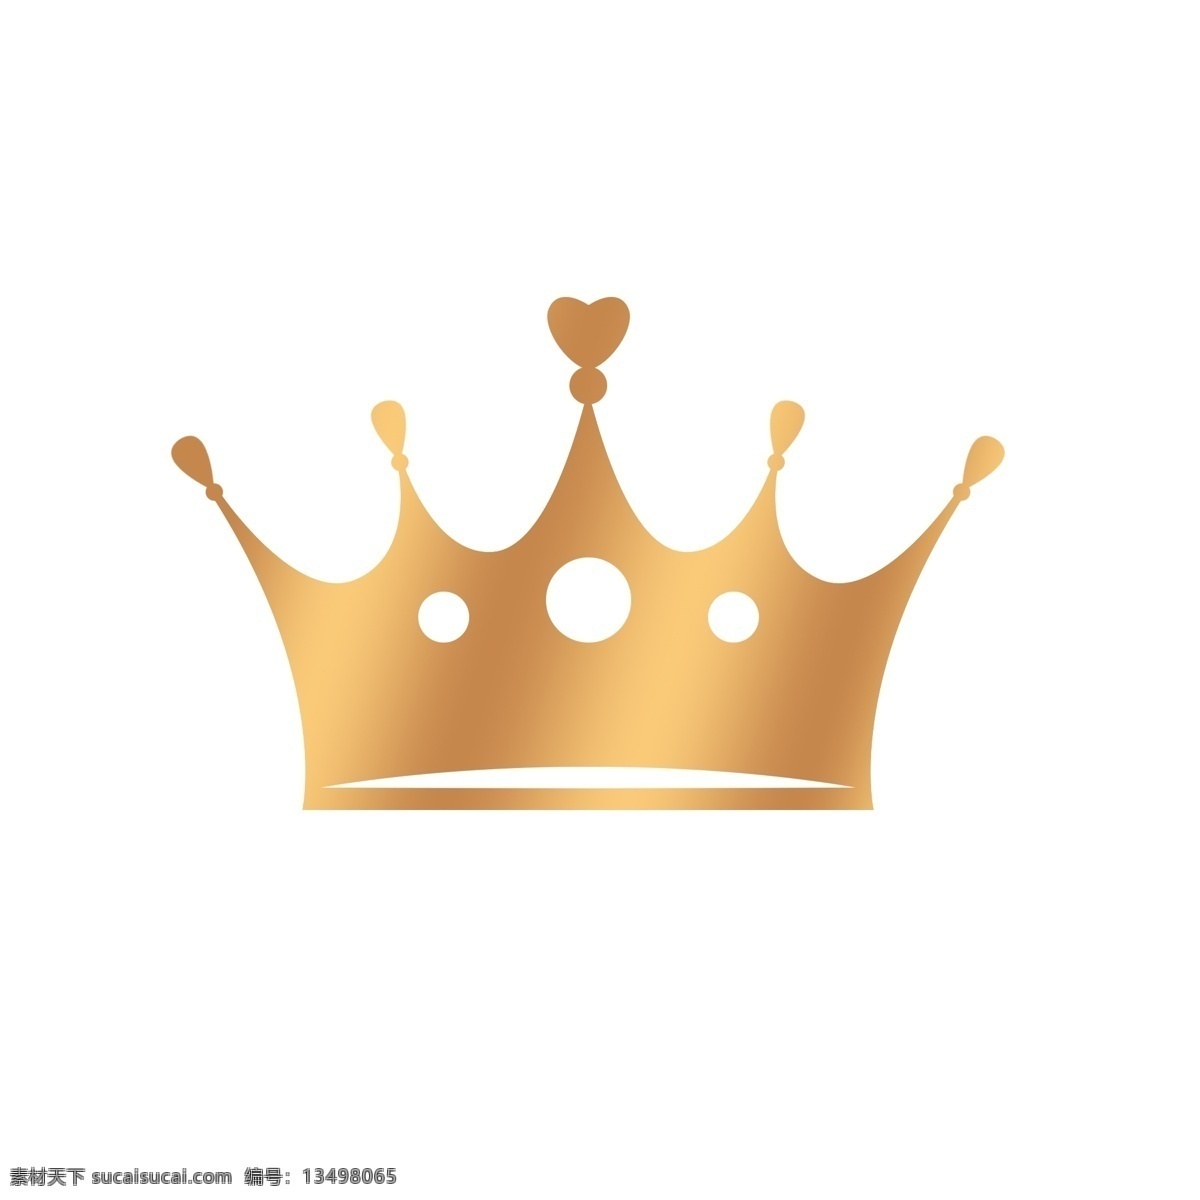 黄色金色皇冠 女王的皇冠 漂亮的皇冠 卡通皇冠 简笔画皇冠 黄色皇冠 金色皇冠 海报素材 儿童节素材 情人节素材 欧式皇冠 绘插画 地位 尊位 权利 王冠 皇冠 等级 共享素材